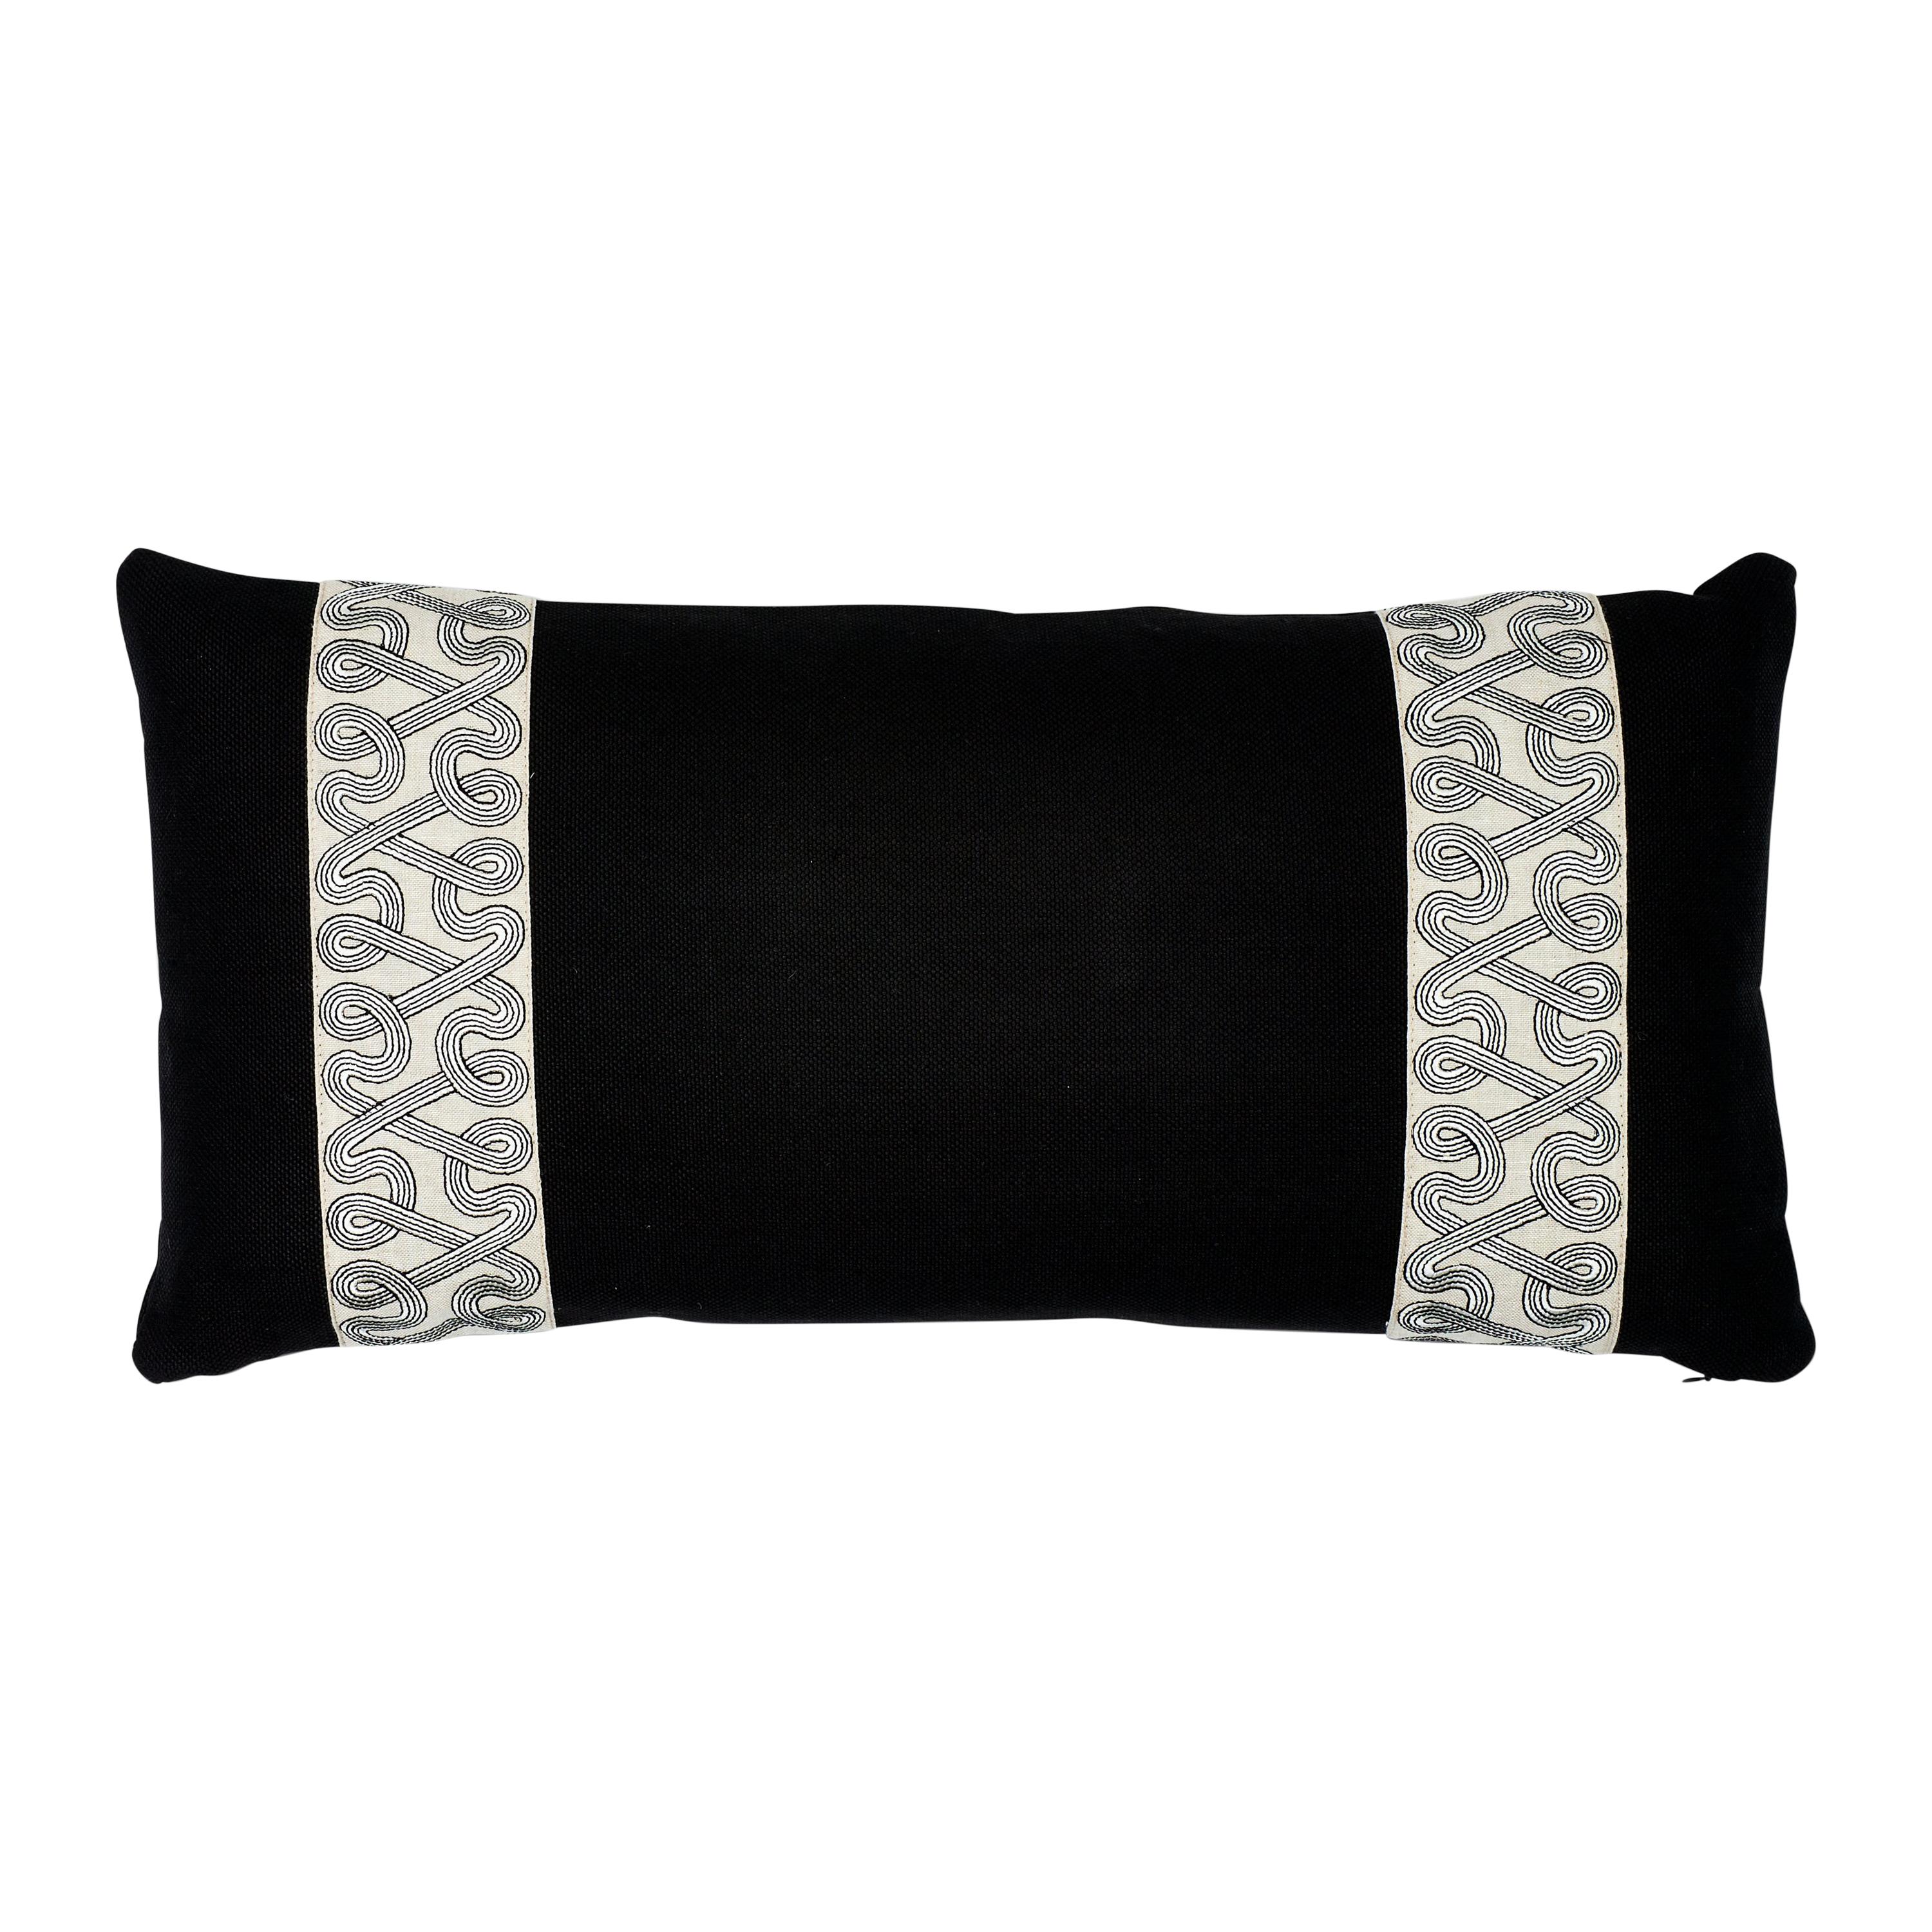 Schumacher Freeform Tape + Piet Performance Linen Black Two-Side Lumbar Pillow